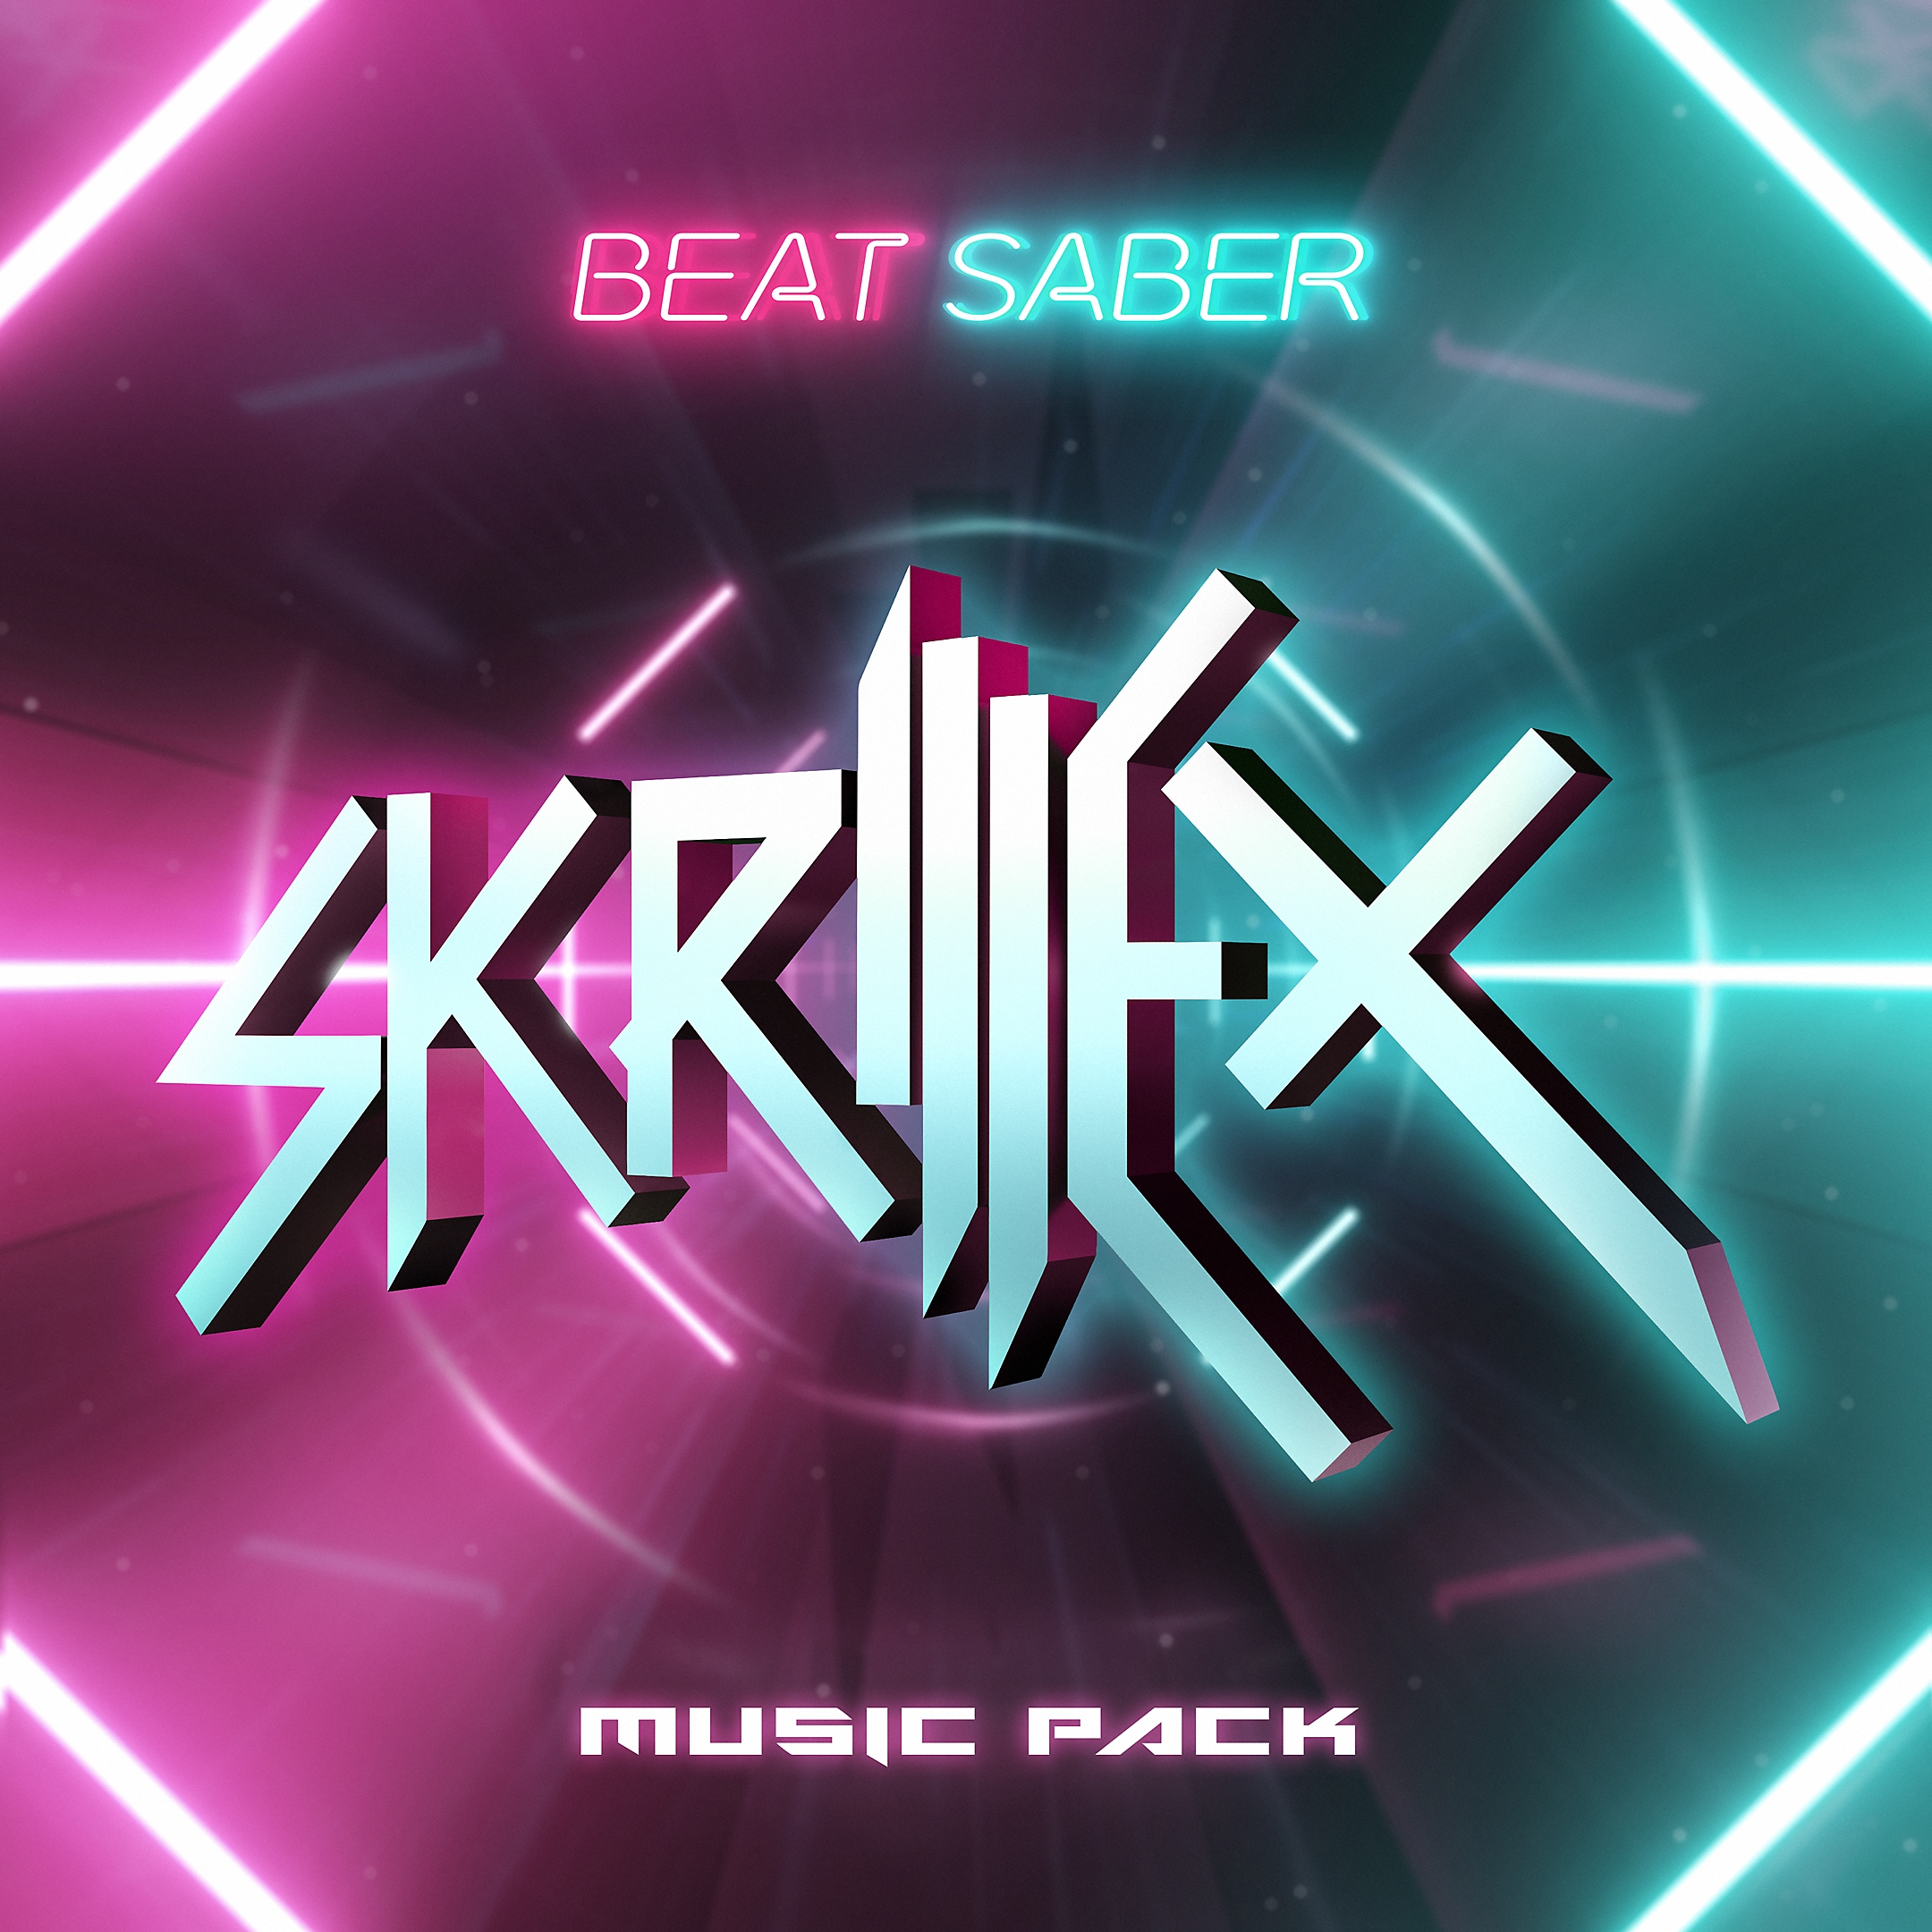 Pacote de Música Skrillex para Beat Saber